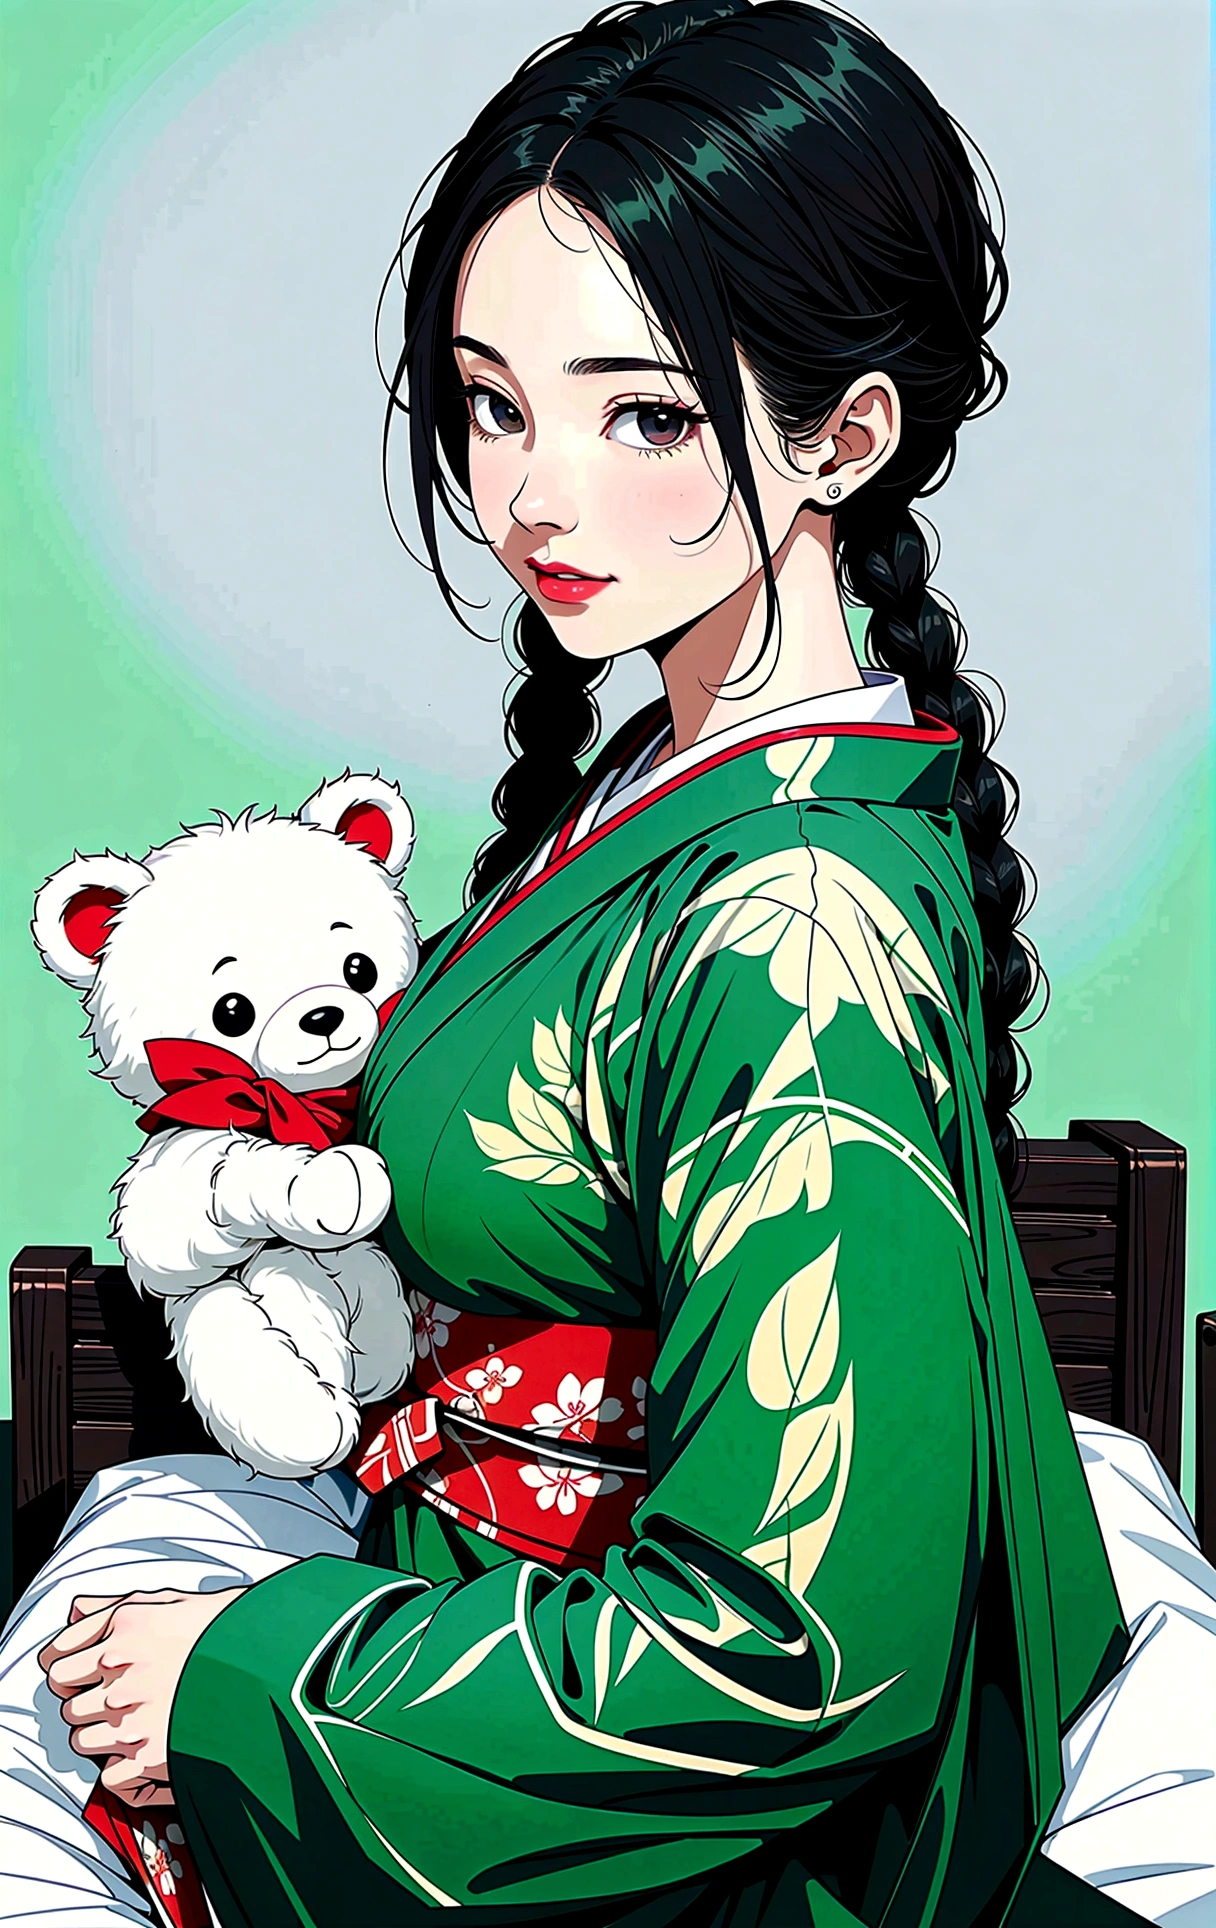 (шедевр, Лучшее качество), (Сверхвысокое разрешение, 8K-RAW-Фото, Фотореалистичный, текстильное затенение, тонкий контур), araffe зрелая женщина in a kimono, Сижу на кровати и обнимаю плюшевого мишку, (носит темно-зеленые шелковые одежды), Темно-зеленая конопля, (носить японское кимоно:1.2, традиционный японский, японская одежда), (благородная одежда юката), носить хаори, (зрелая женщина, мамаша:1.5, 28 лет, один), (Большойe Brust, обвисшая грудь, Большой , Тонкая талия, Большой ass, пышные тела), (волосы средней длины, волосы над одним глазом, асимметричные волосы, низкая завязанная коса), (умные студенты, детальные глаза, очень детальное лицо), глазная конфетка, (грустная улыбка), (Глядя вниз:1.3), (Динамический угол, Сверху), (правильная анатомия:1.5, Правая рука), (идеальное соотношение пропорций тела),